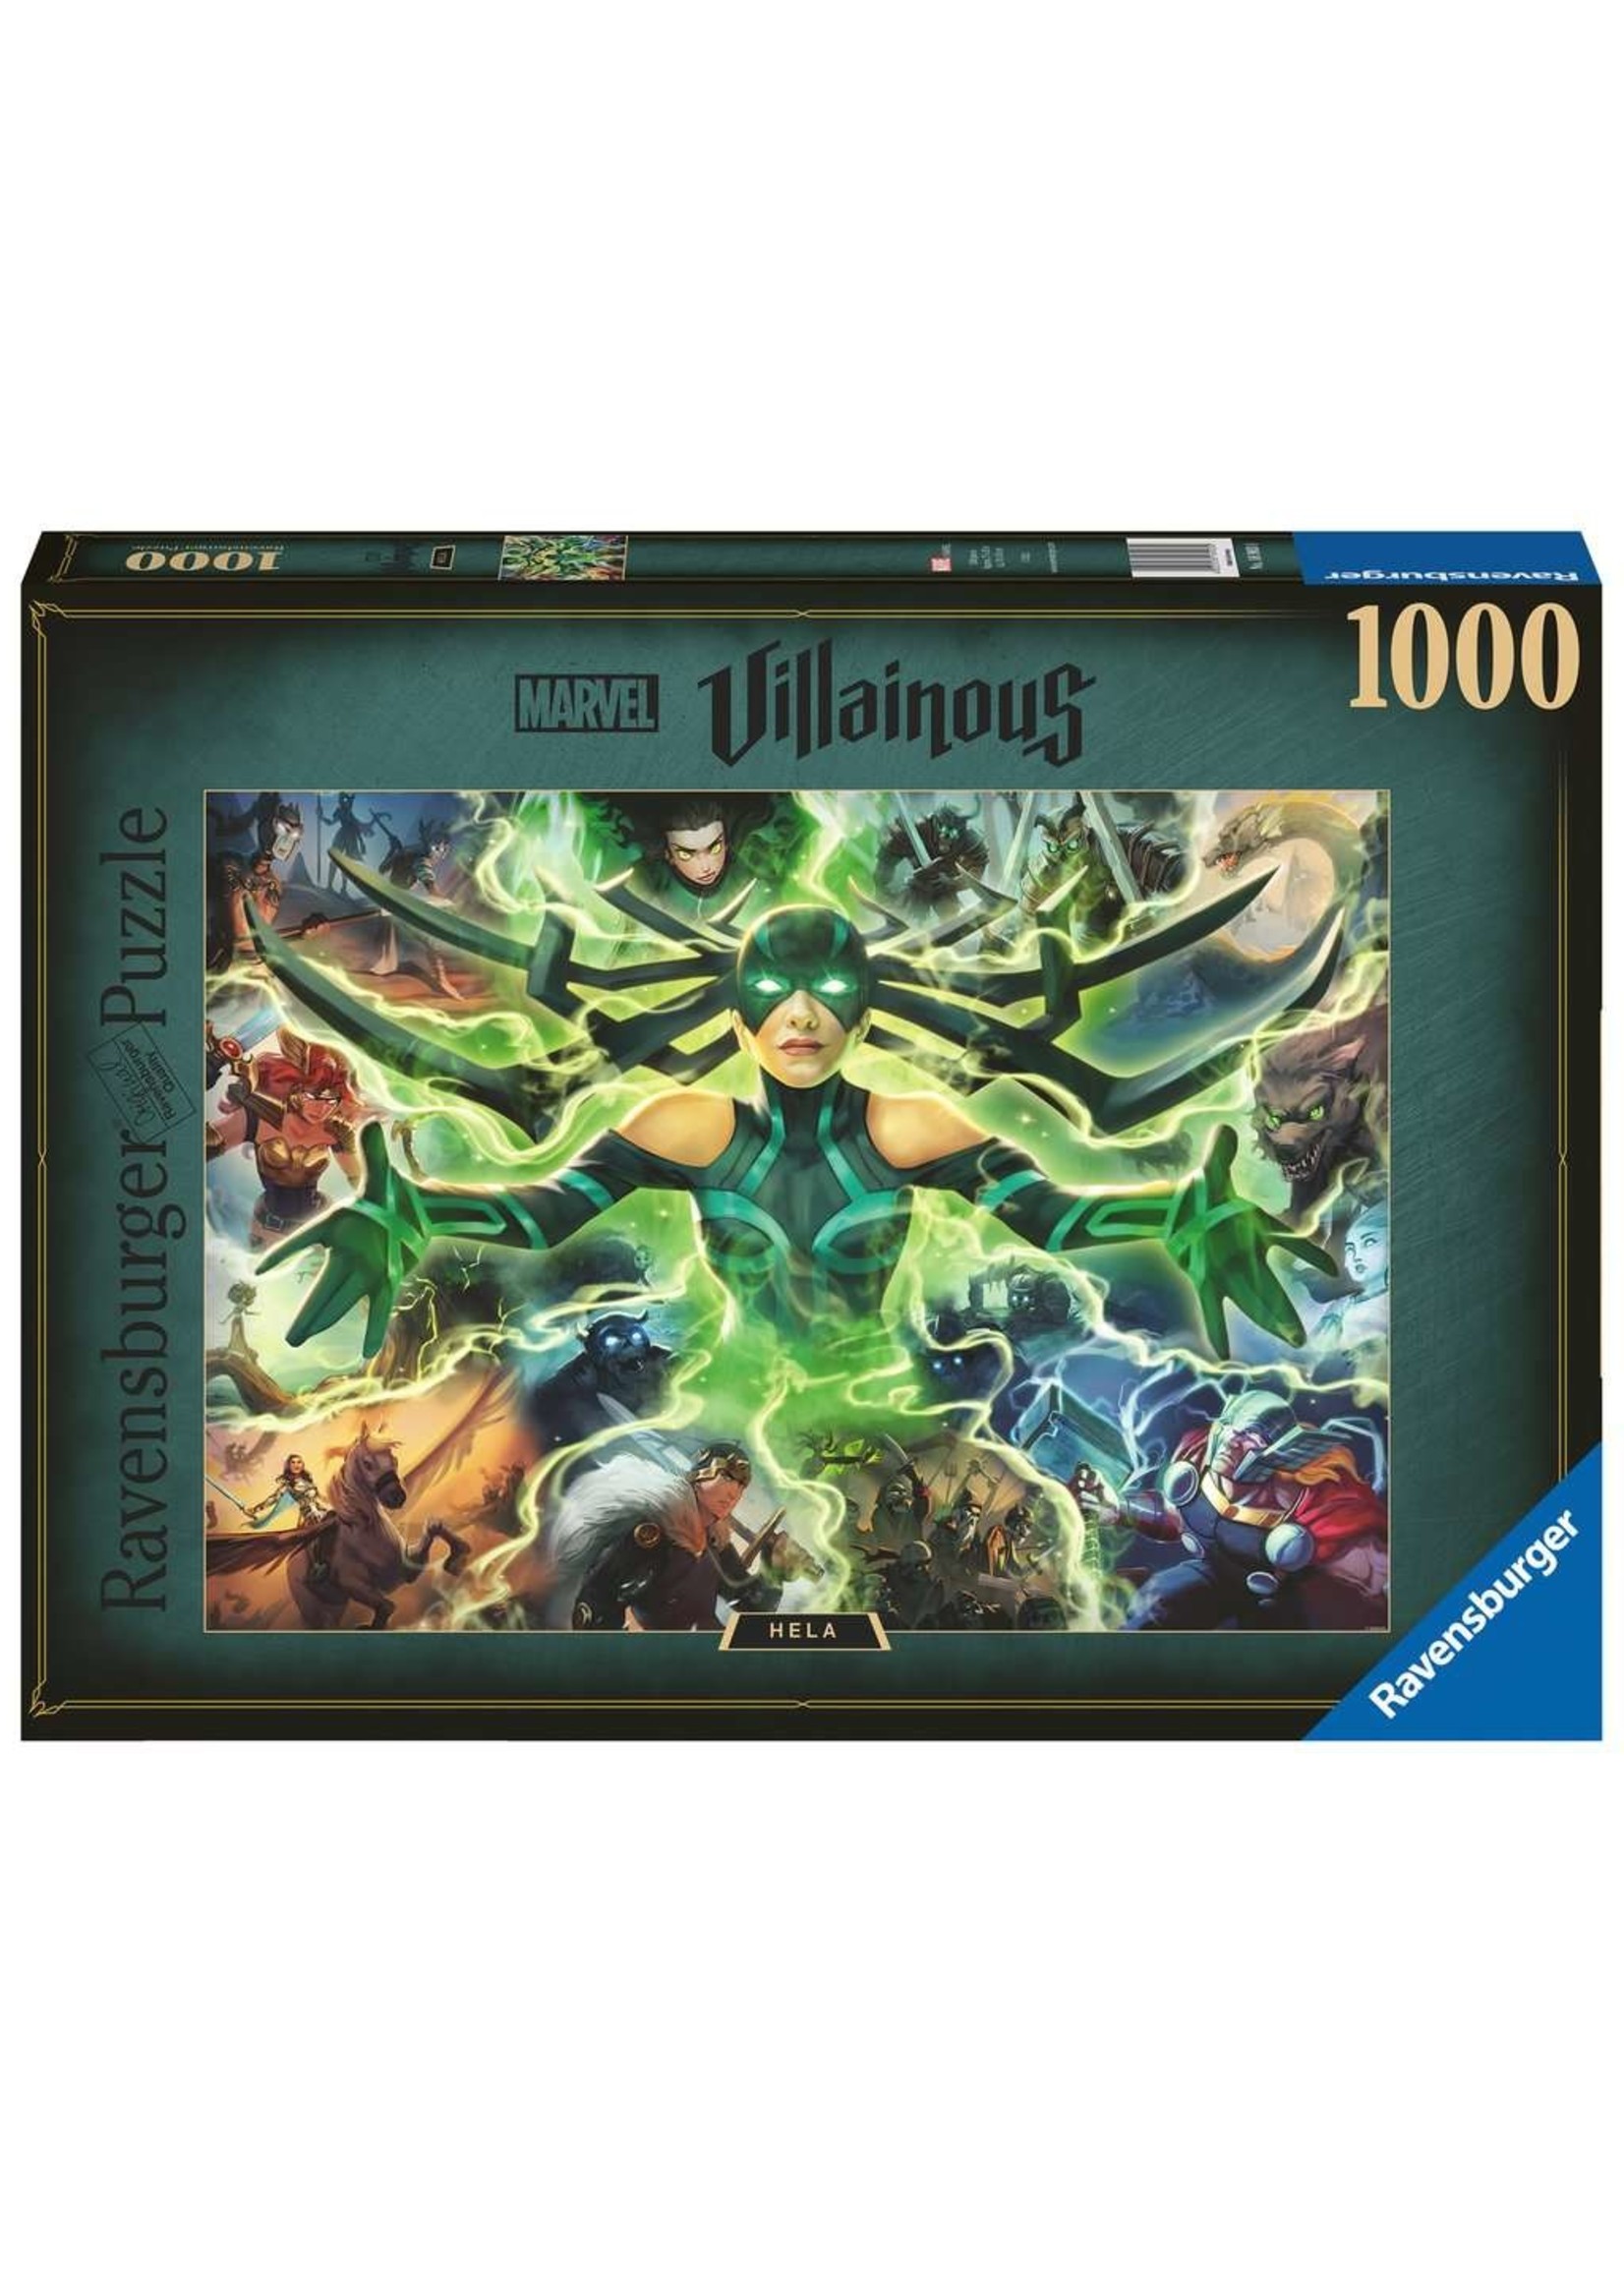 Ravensburger Marvel Villainous: Hela - 1000 Piece Puzzle